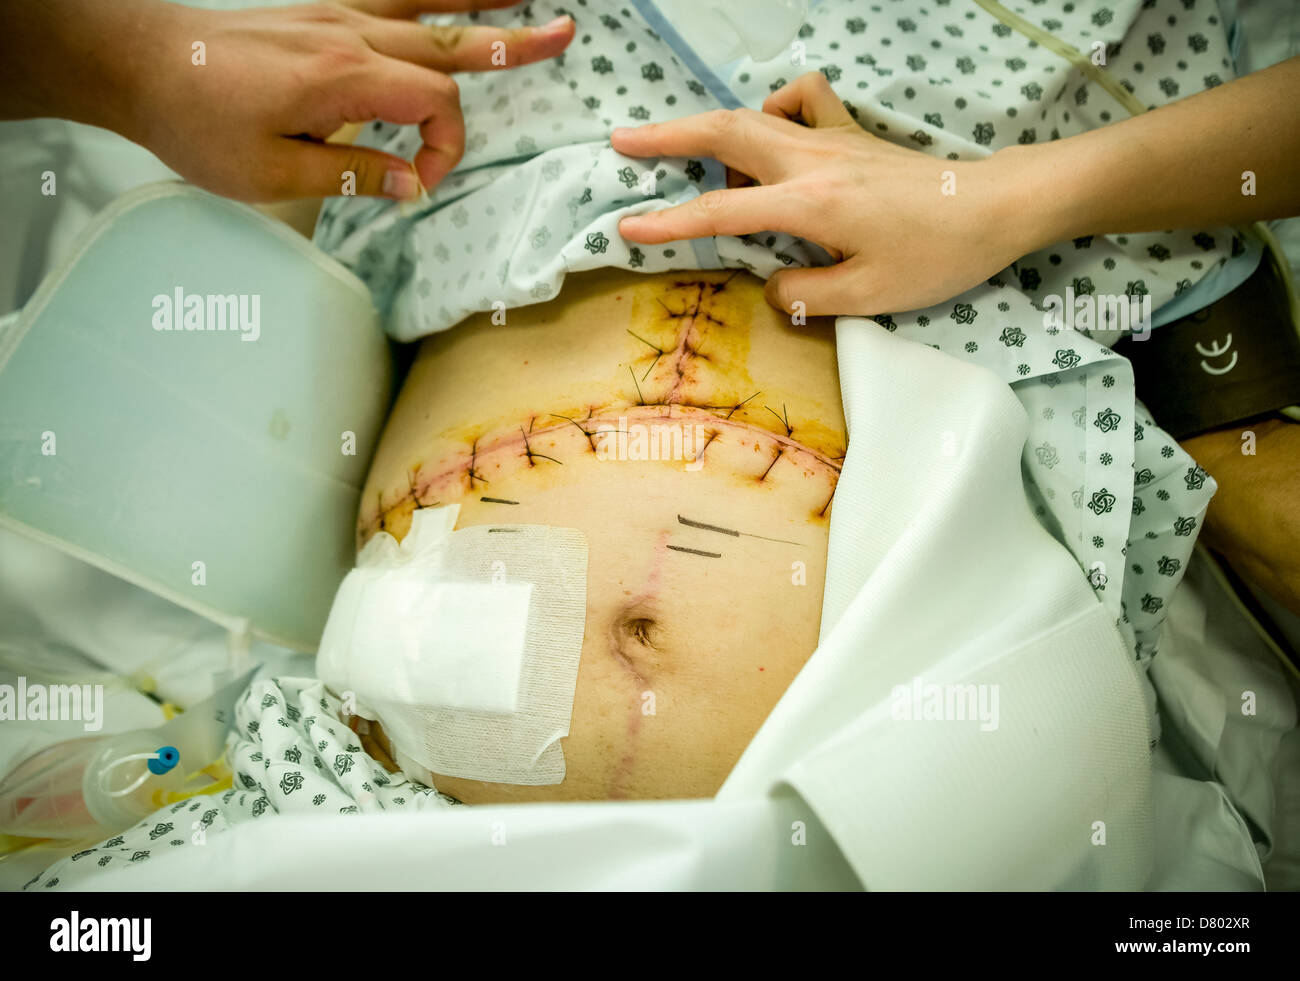 Personal médico atender a un paciente que ha tenido puntos de sutura en la zona abdominal después de la cirugía, en una unidad de cuidados intensivos. Foto de stock